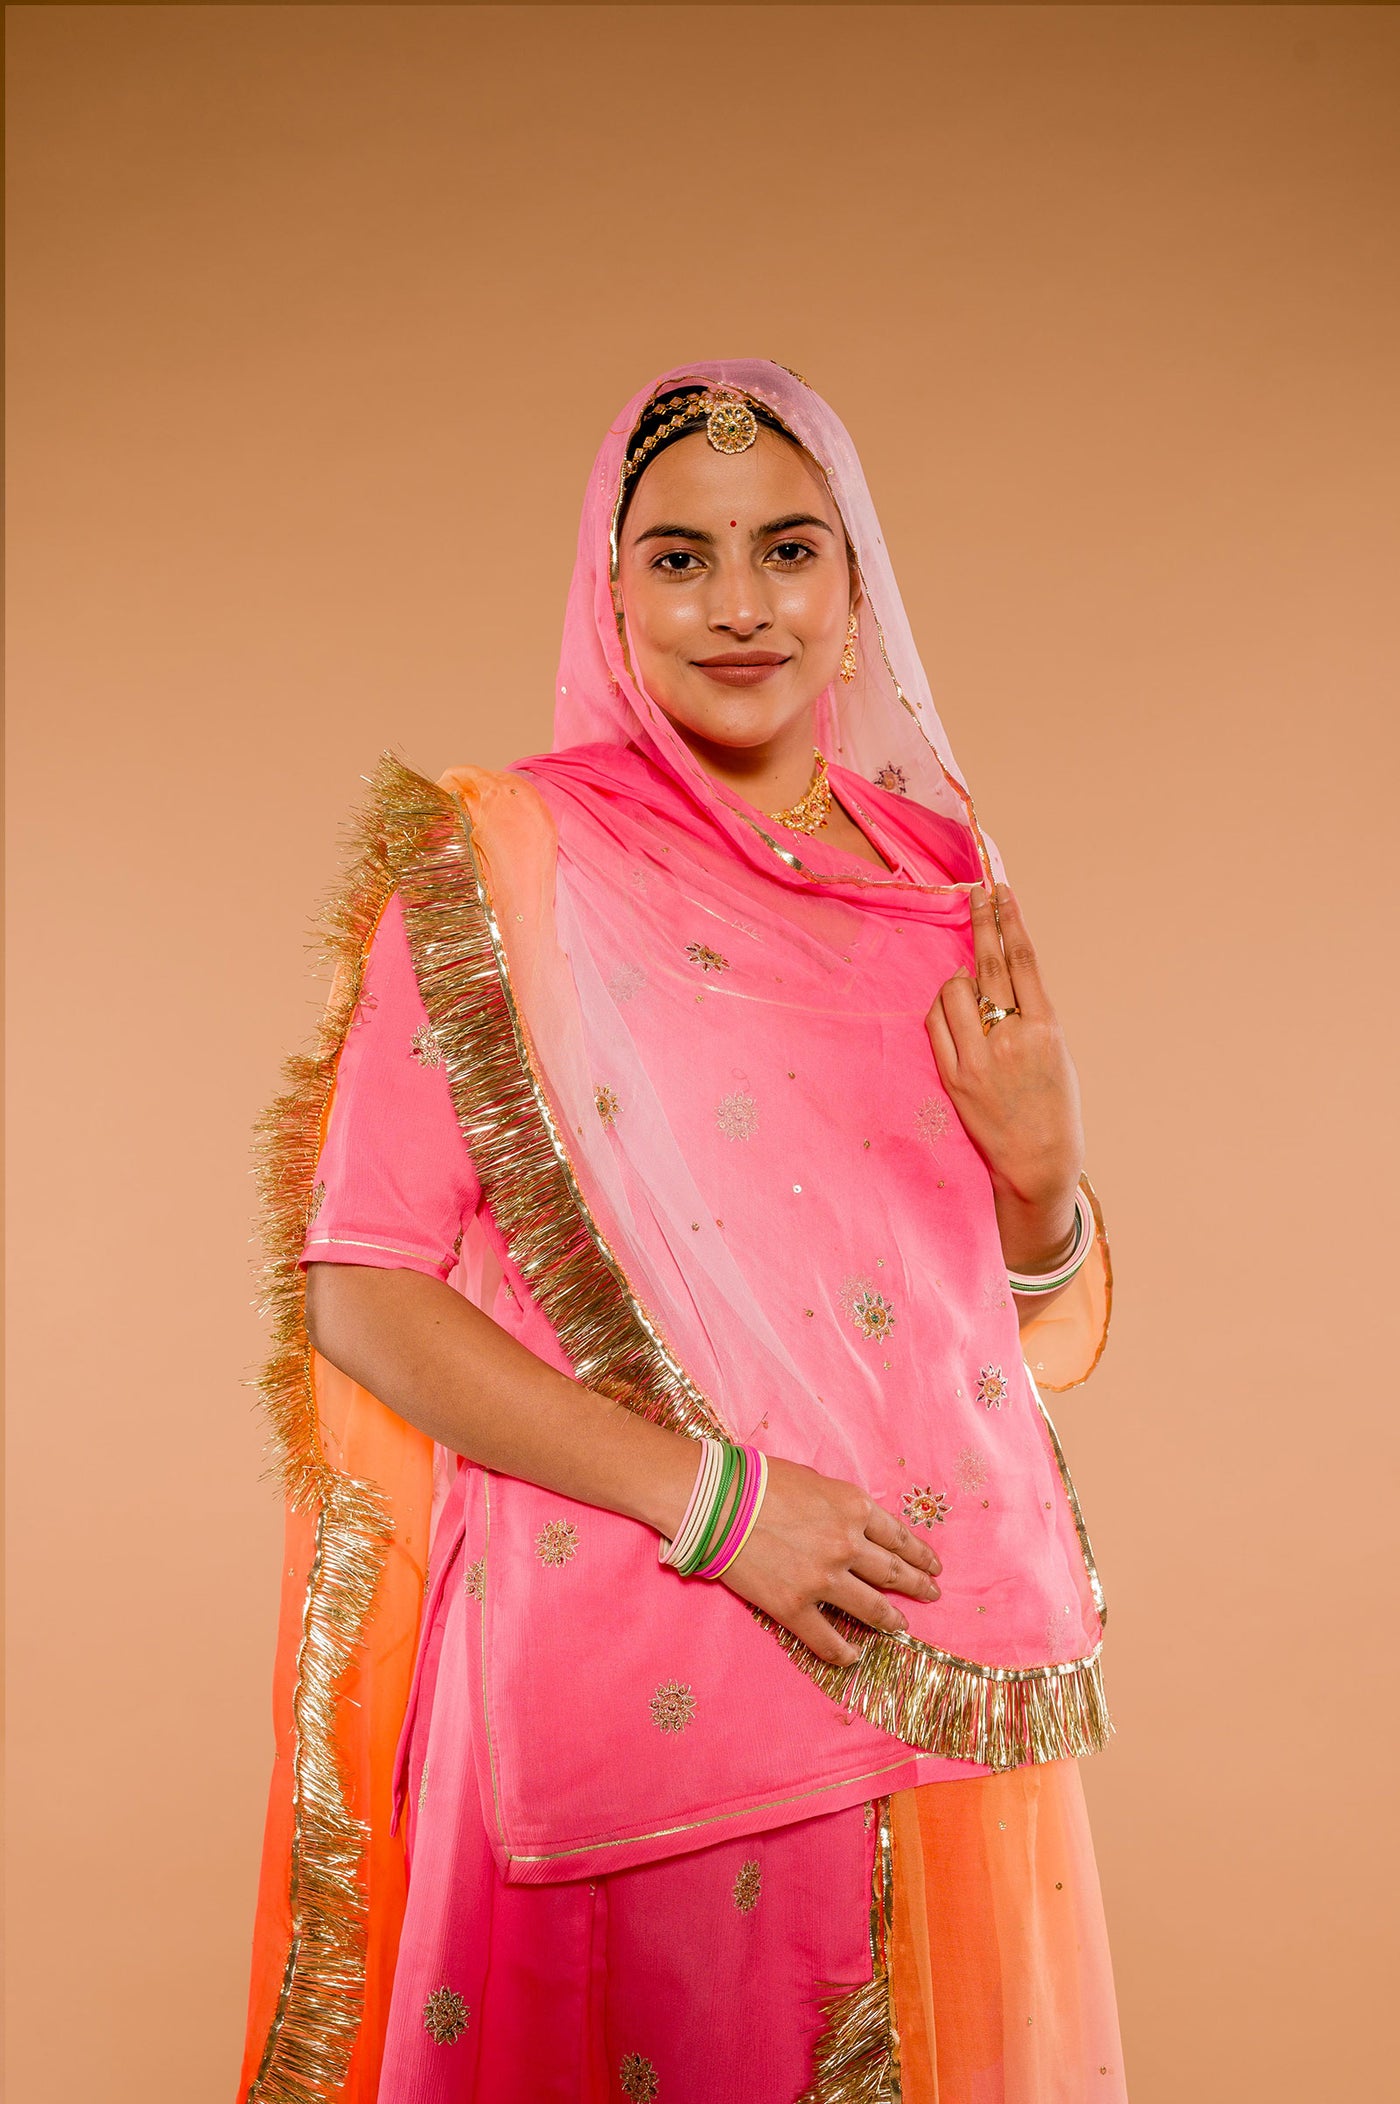 Aari Resham & Sequins Pink Suit